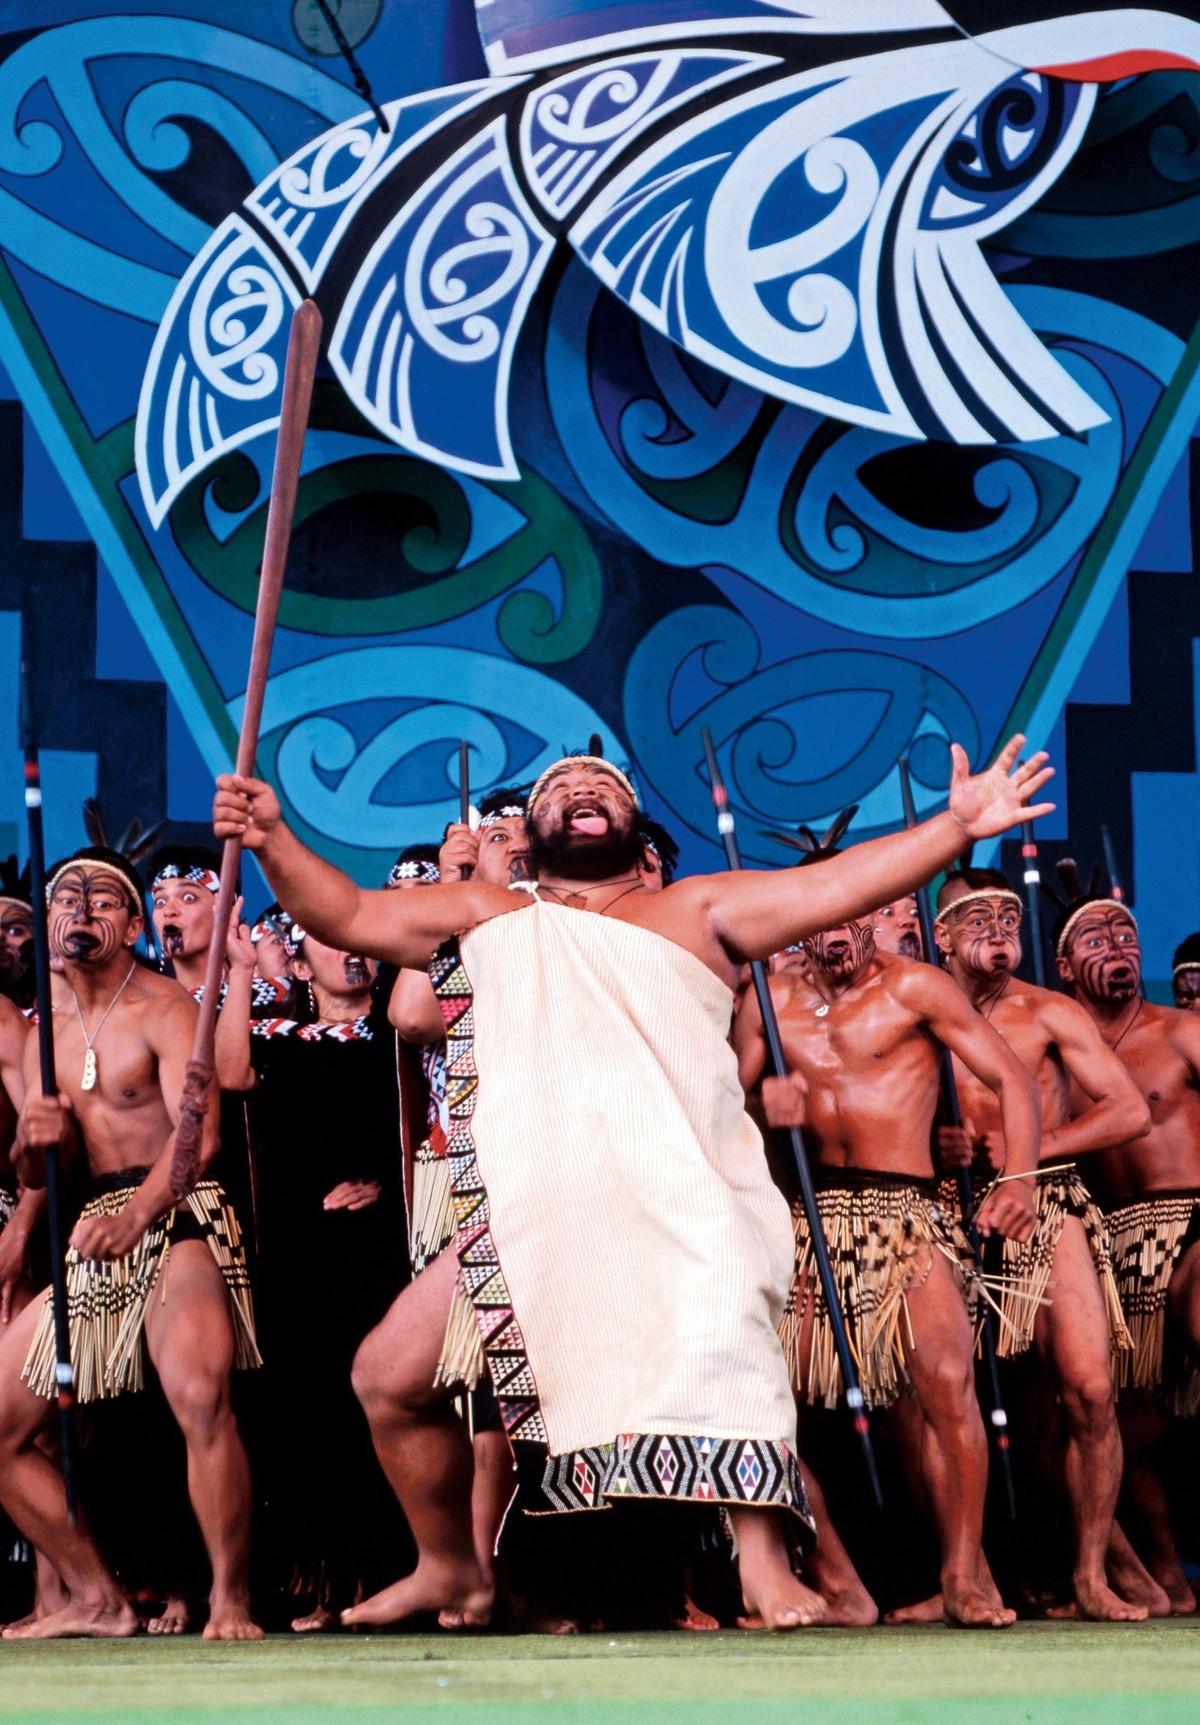 Maori Haka dance